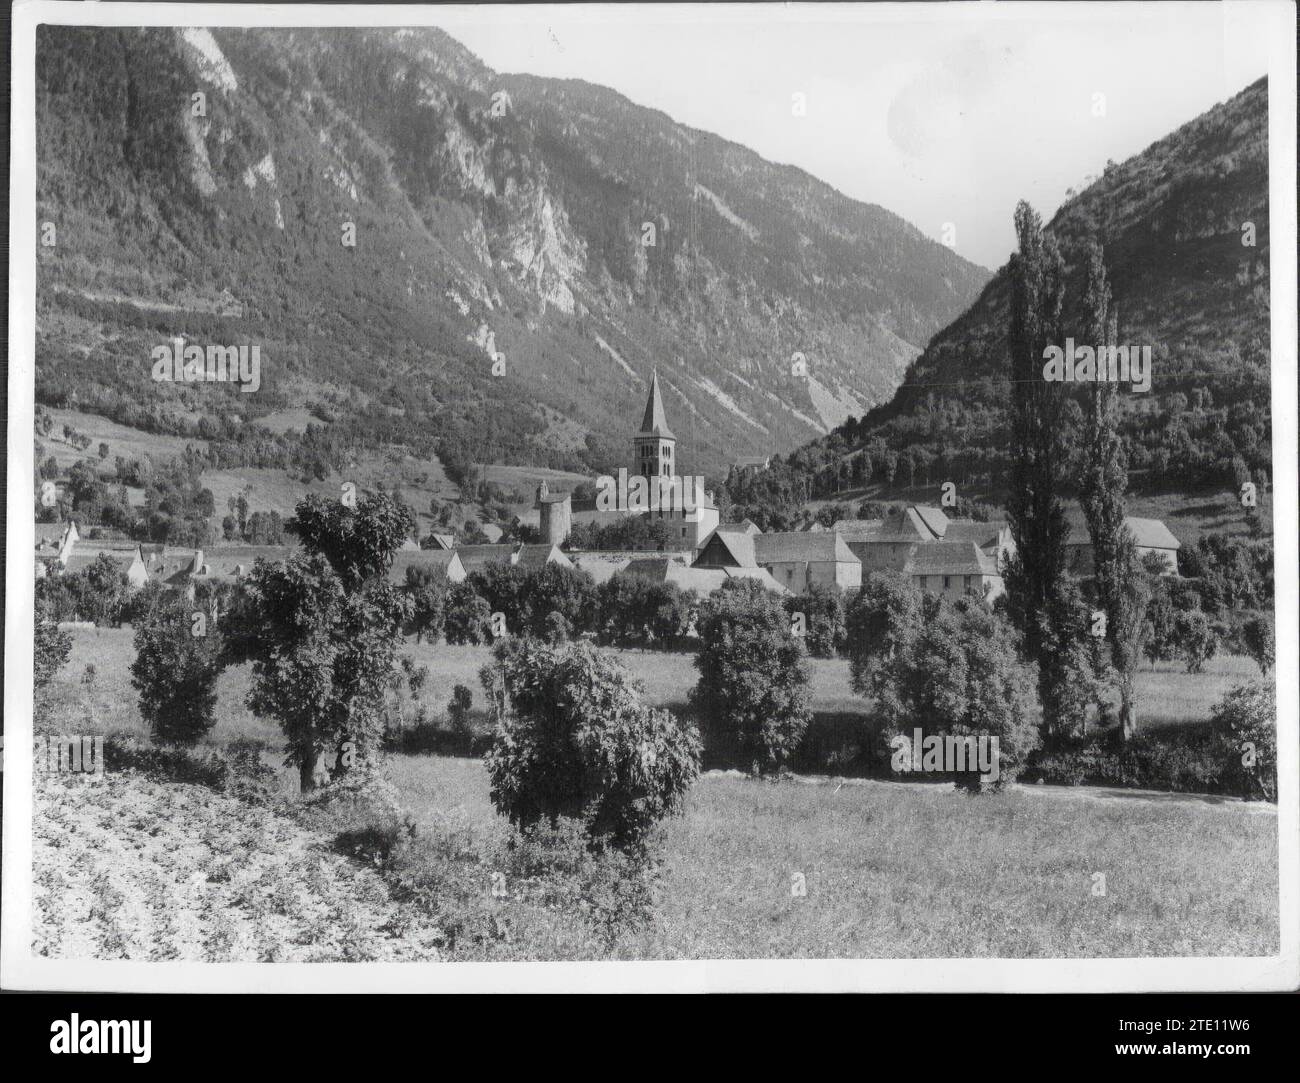 12/31/1949. In the image the Arties tower and the Aran valley. Credit: Album / Archivo ABC / Marques De Santa María Del Villar Stock Photo